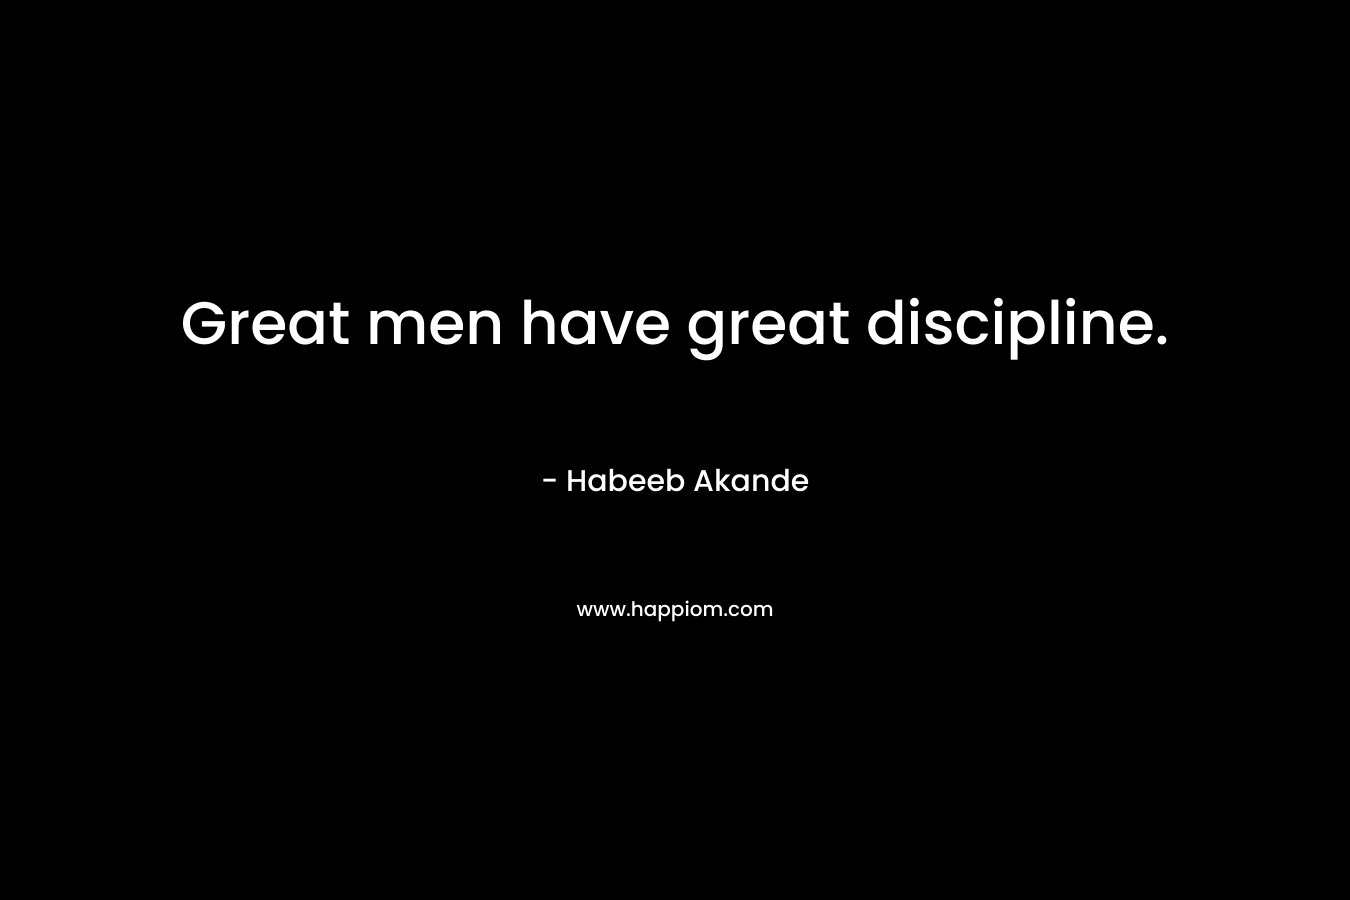 Great men have great discipline.